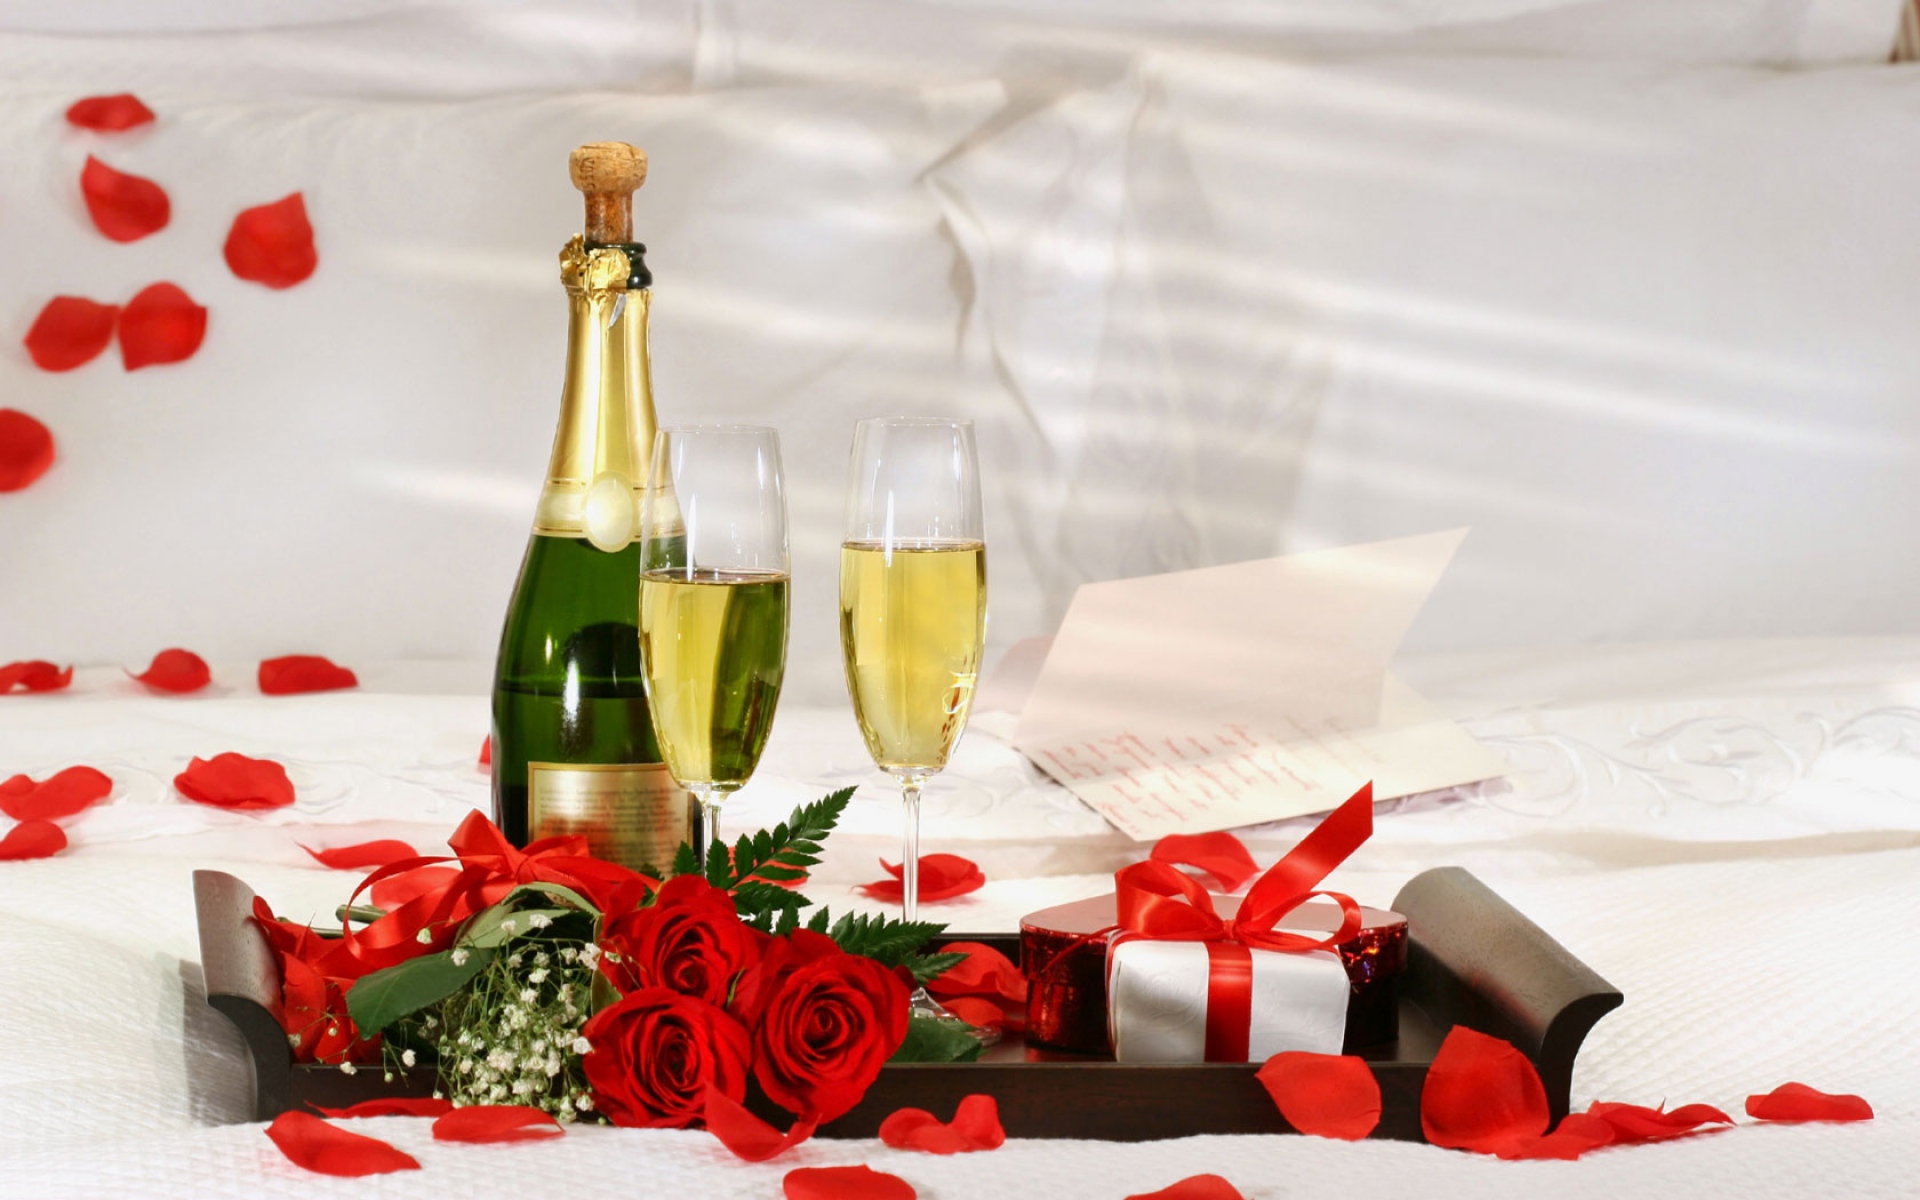 Картинки Шампанское, напитки, подарки, праздник фото и обои на рабочий стол